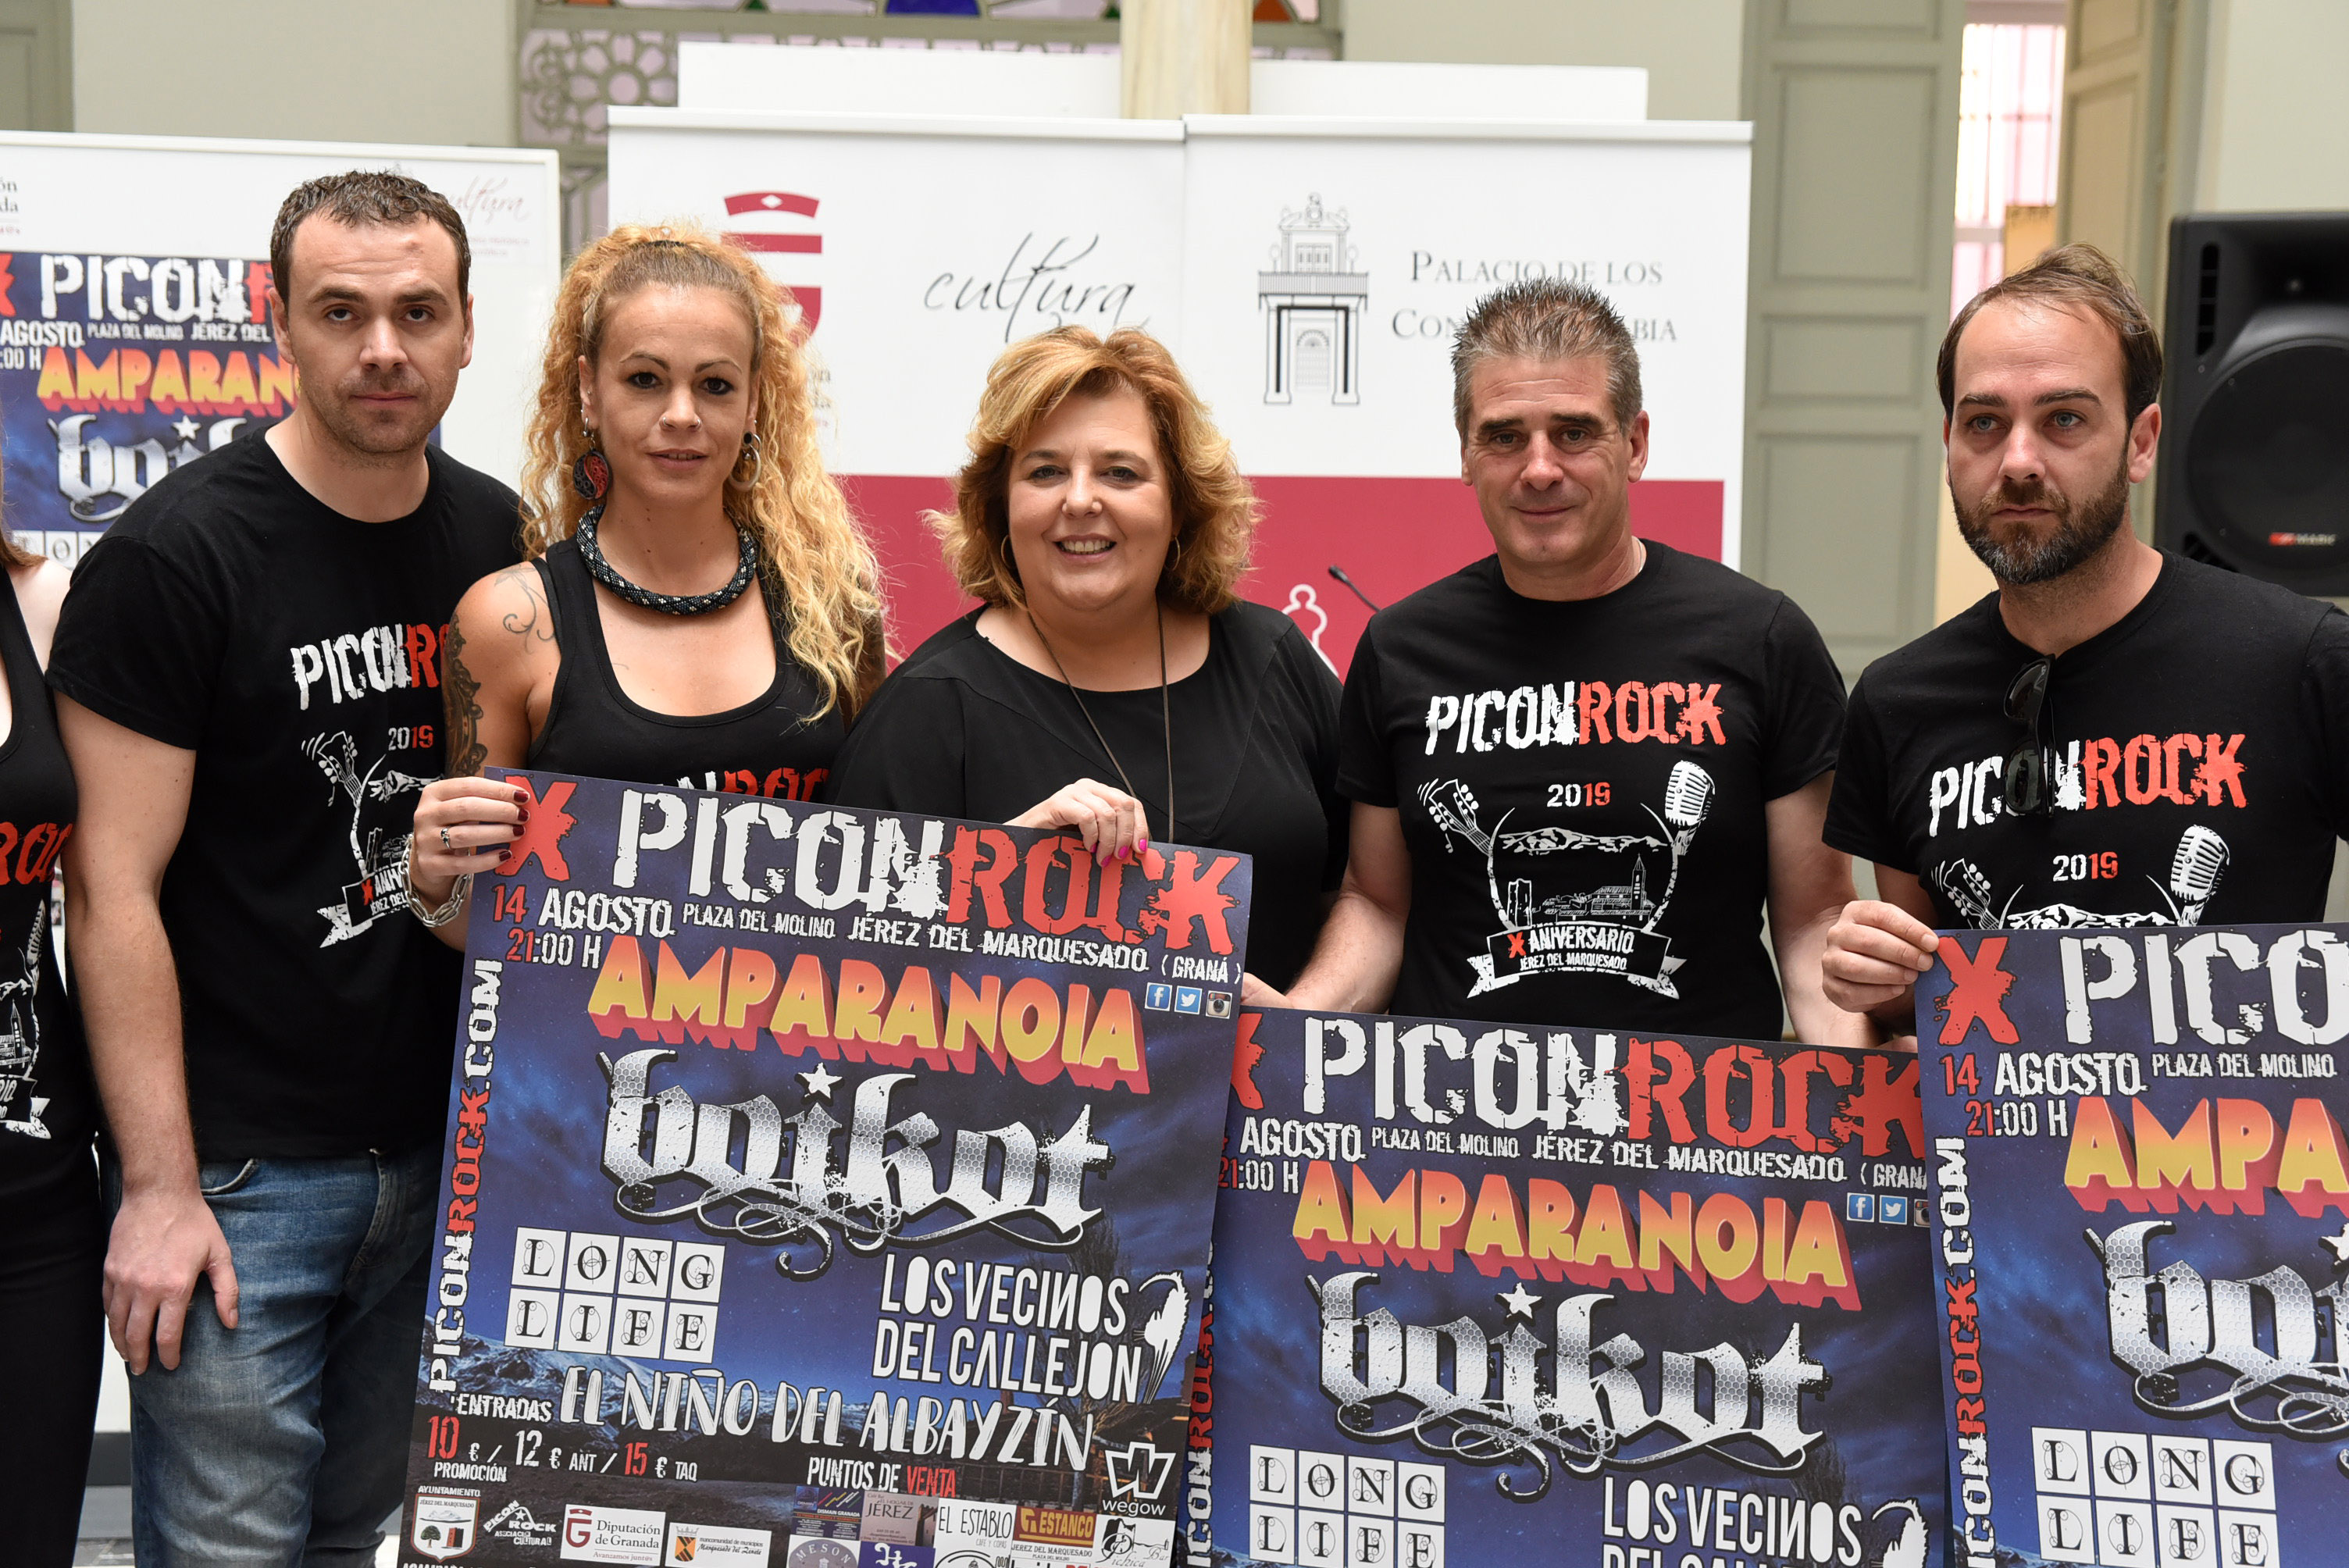 Amparanoia encabeza el cartel de la X edición del Piconrock en Jérez del Marquesado